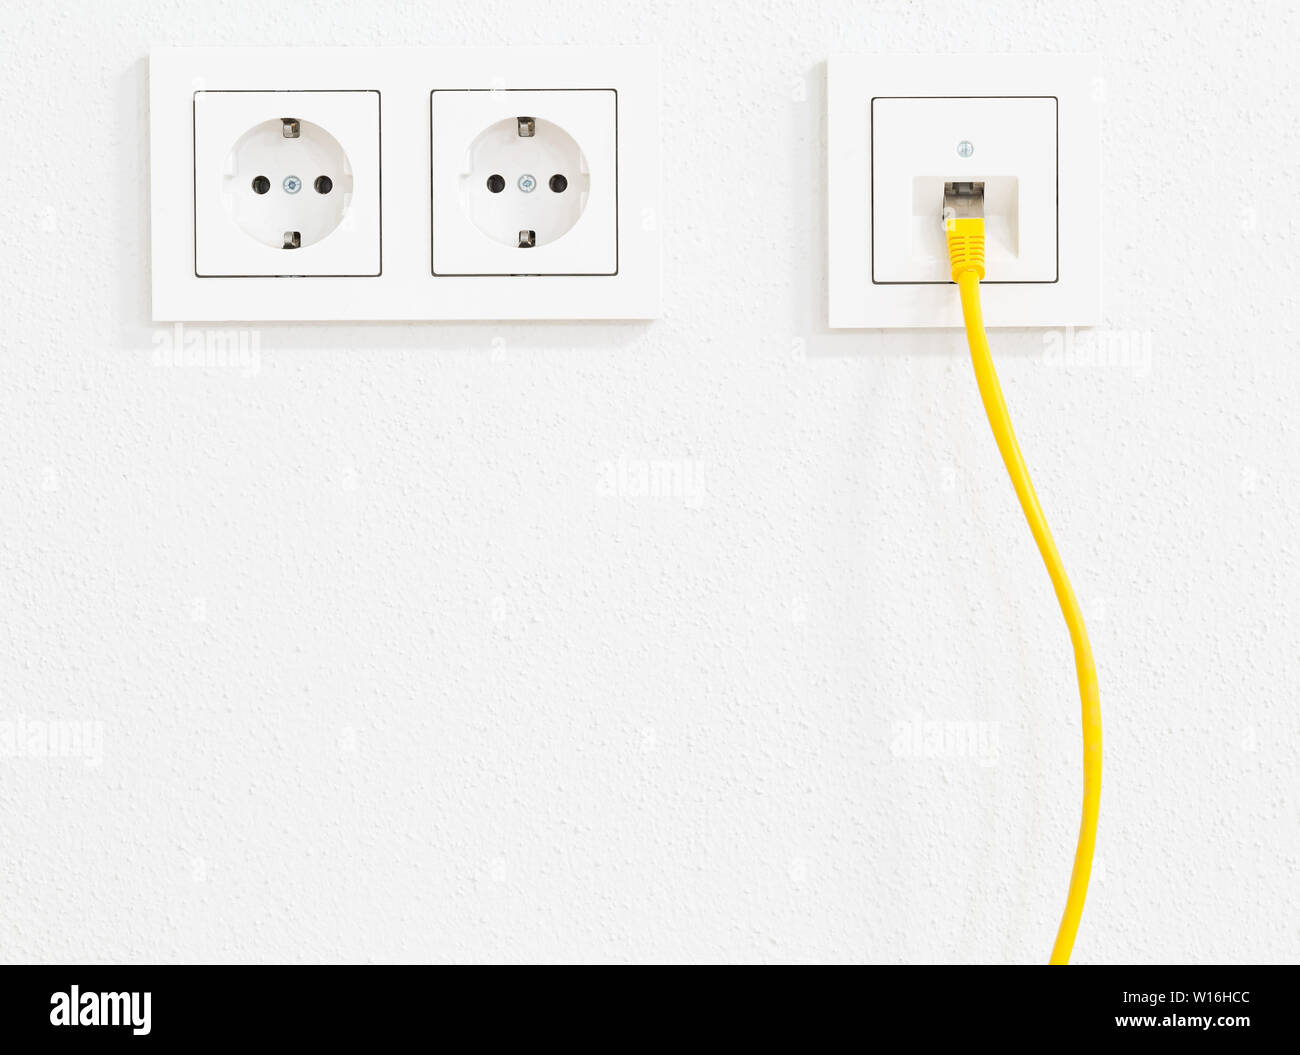 Gelbe Kabel in Steckdose für Büro oder private LAN-Ethernet-Anschluss mit  Steckdosen flache Ansicht auf weiß verputzten Wand Hintergrund  Stockfotografie - Alamy